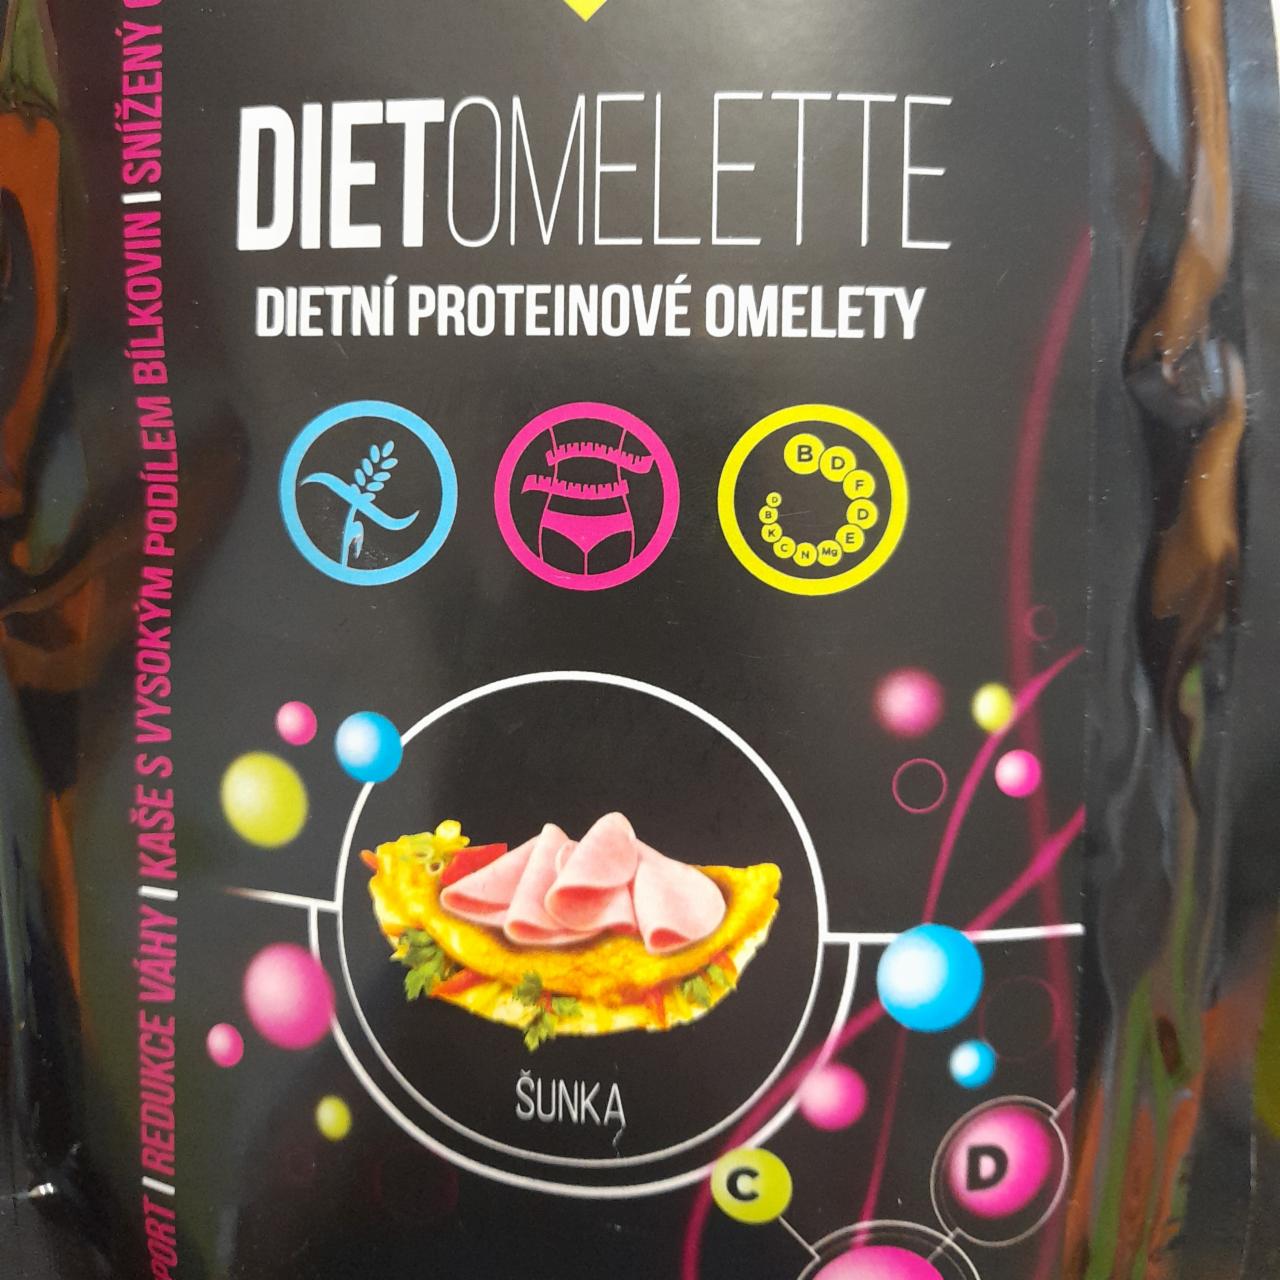 Fotografie - Dietomelette dietní proteinové omelety šunka KetoLinie